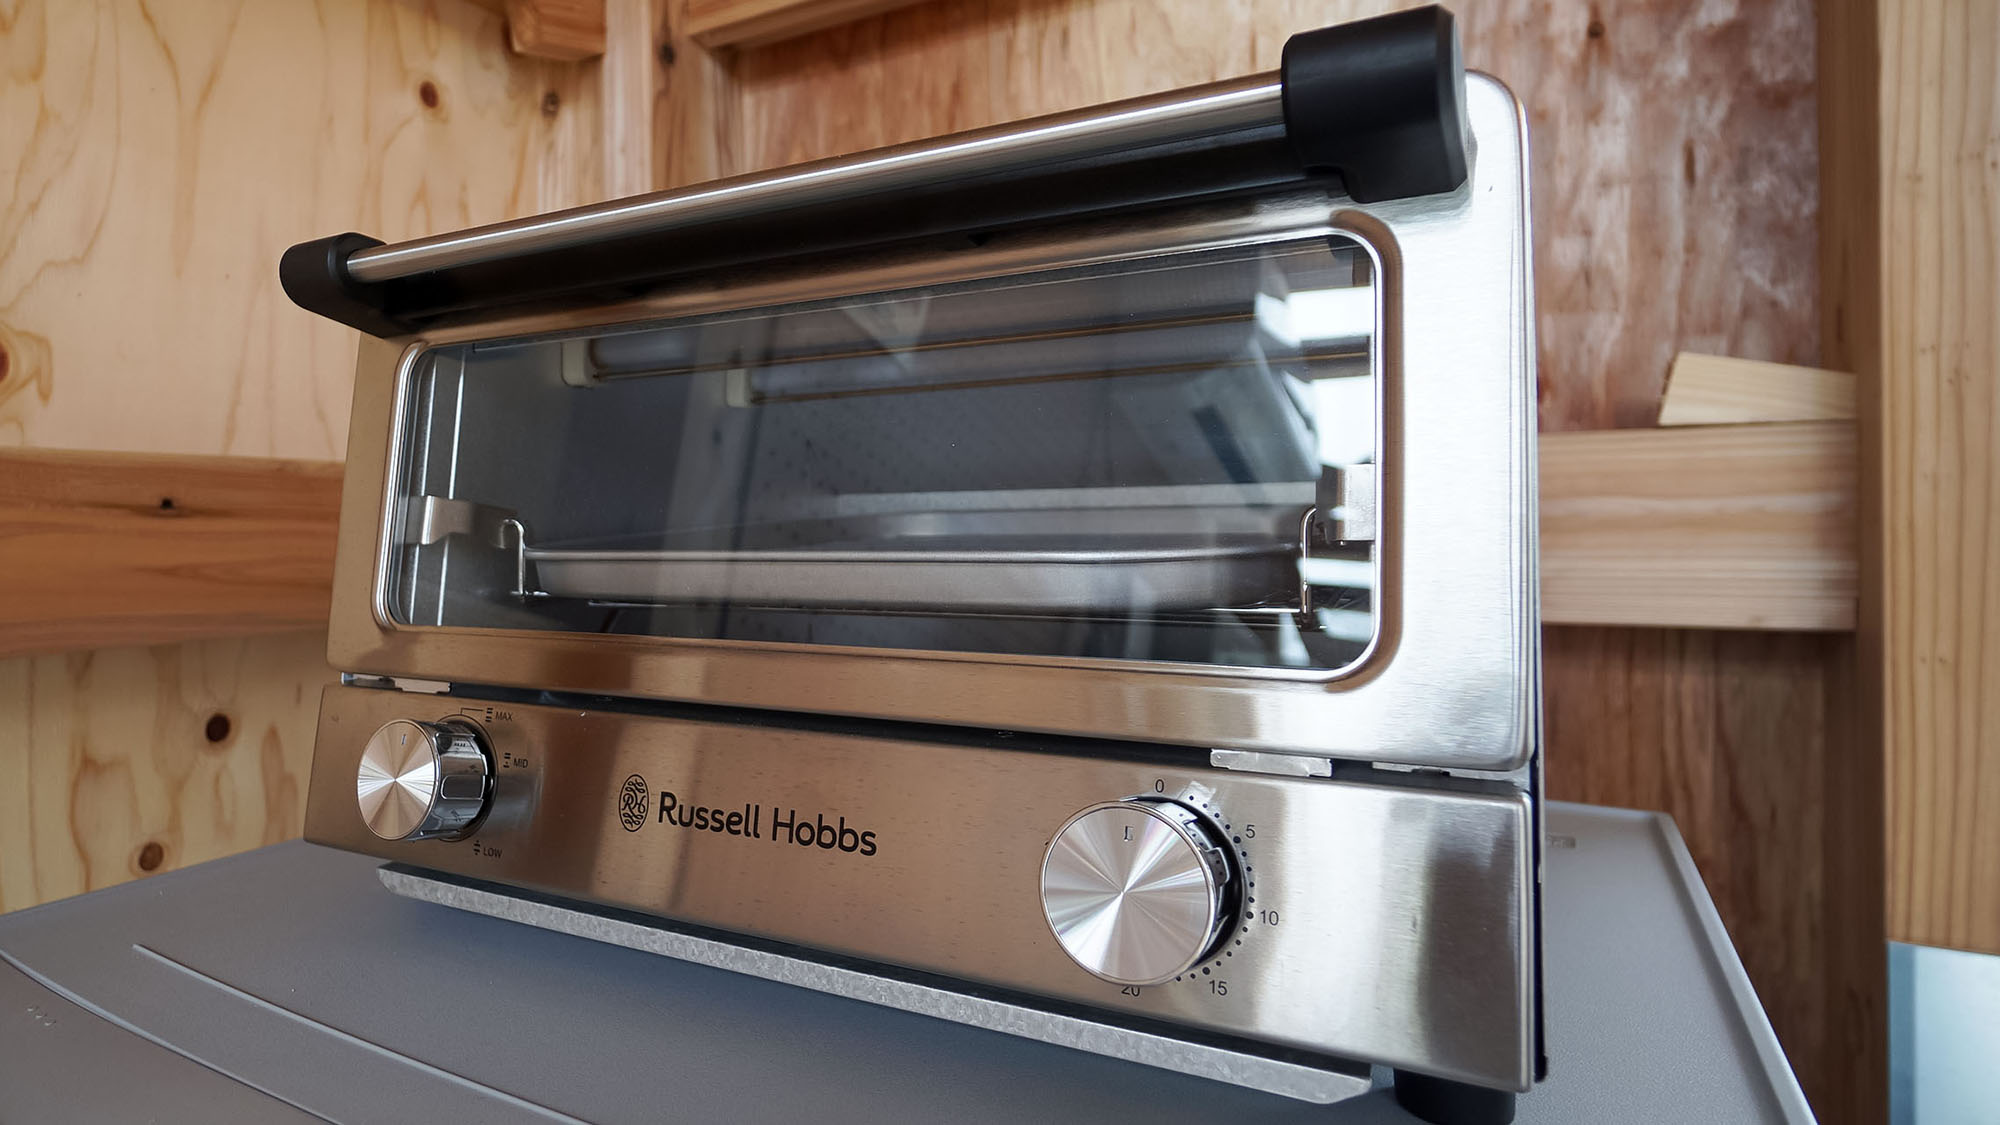 ・オーブントースター / Toaster oven